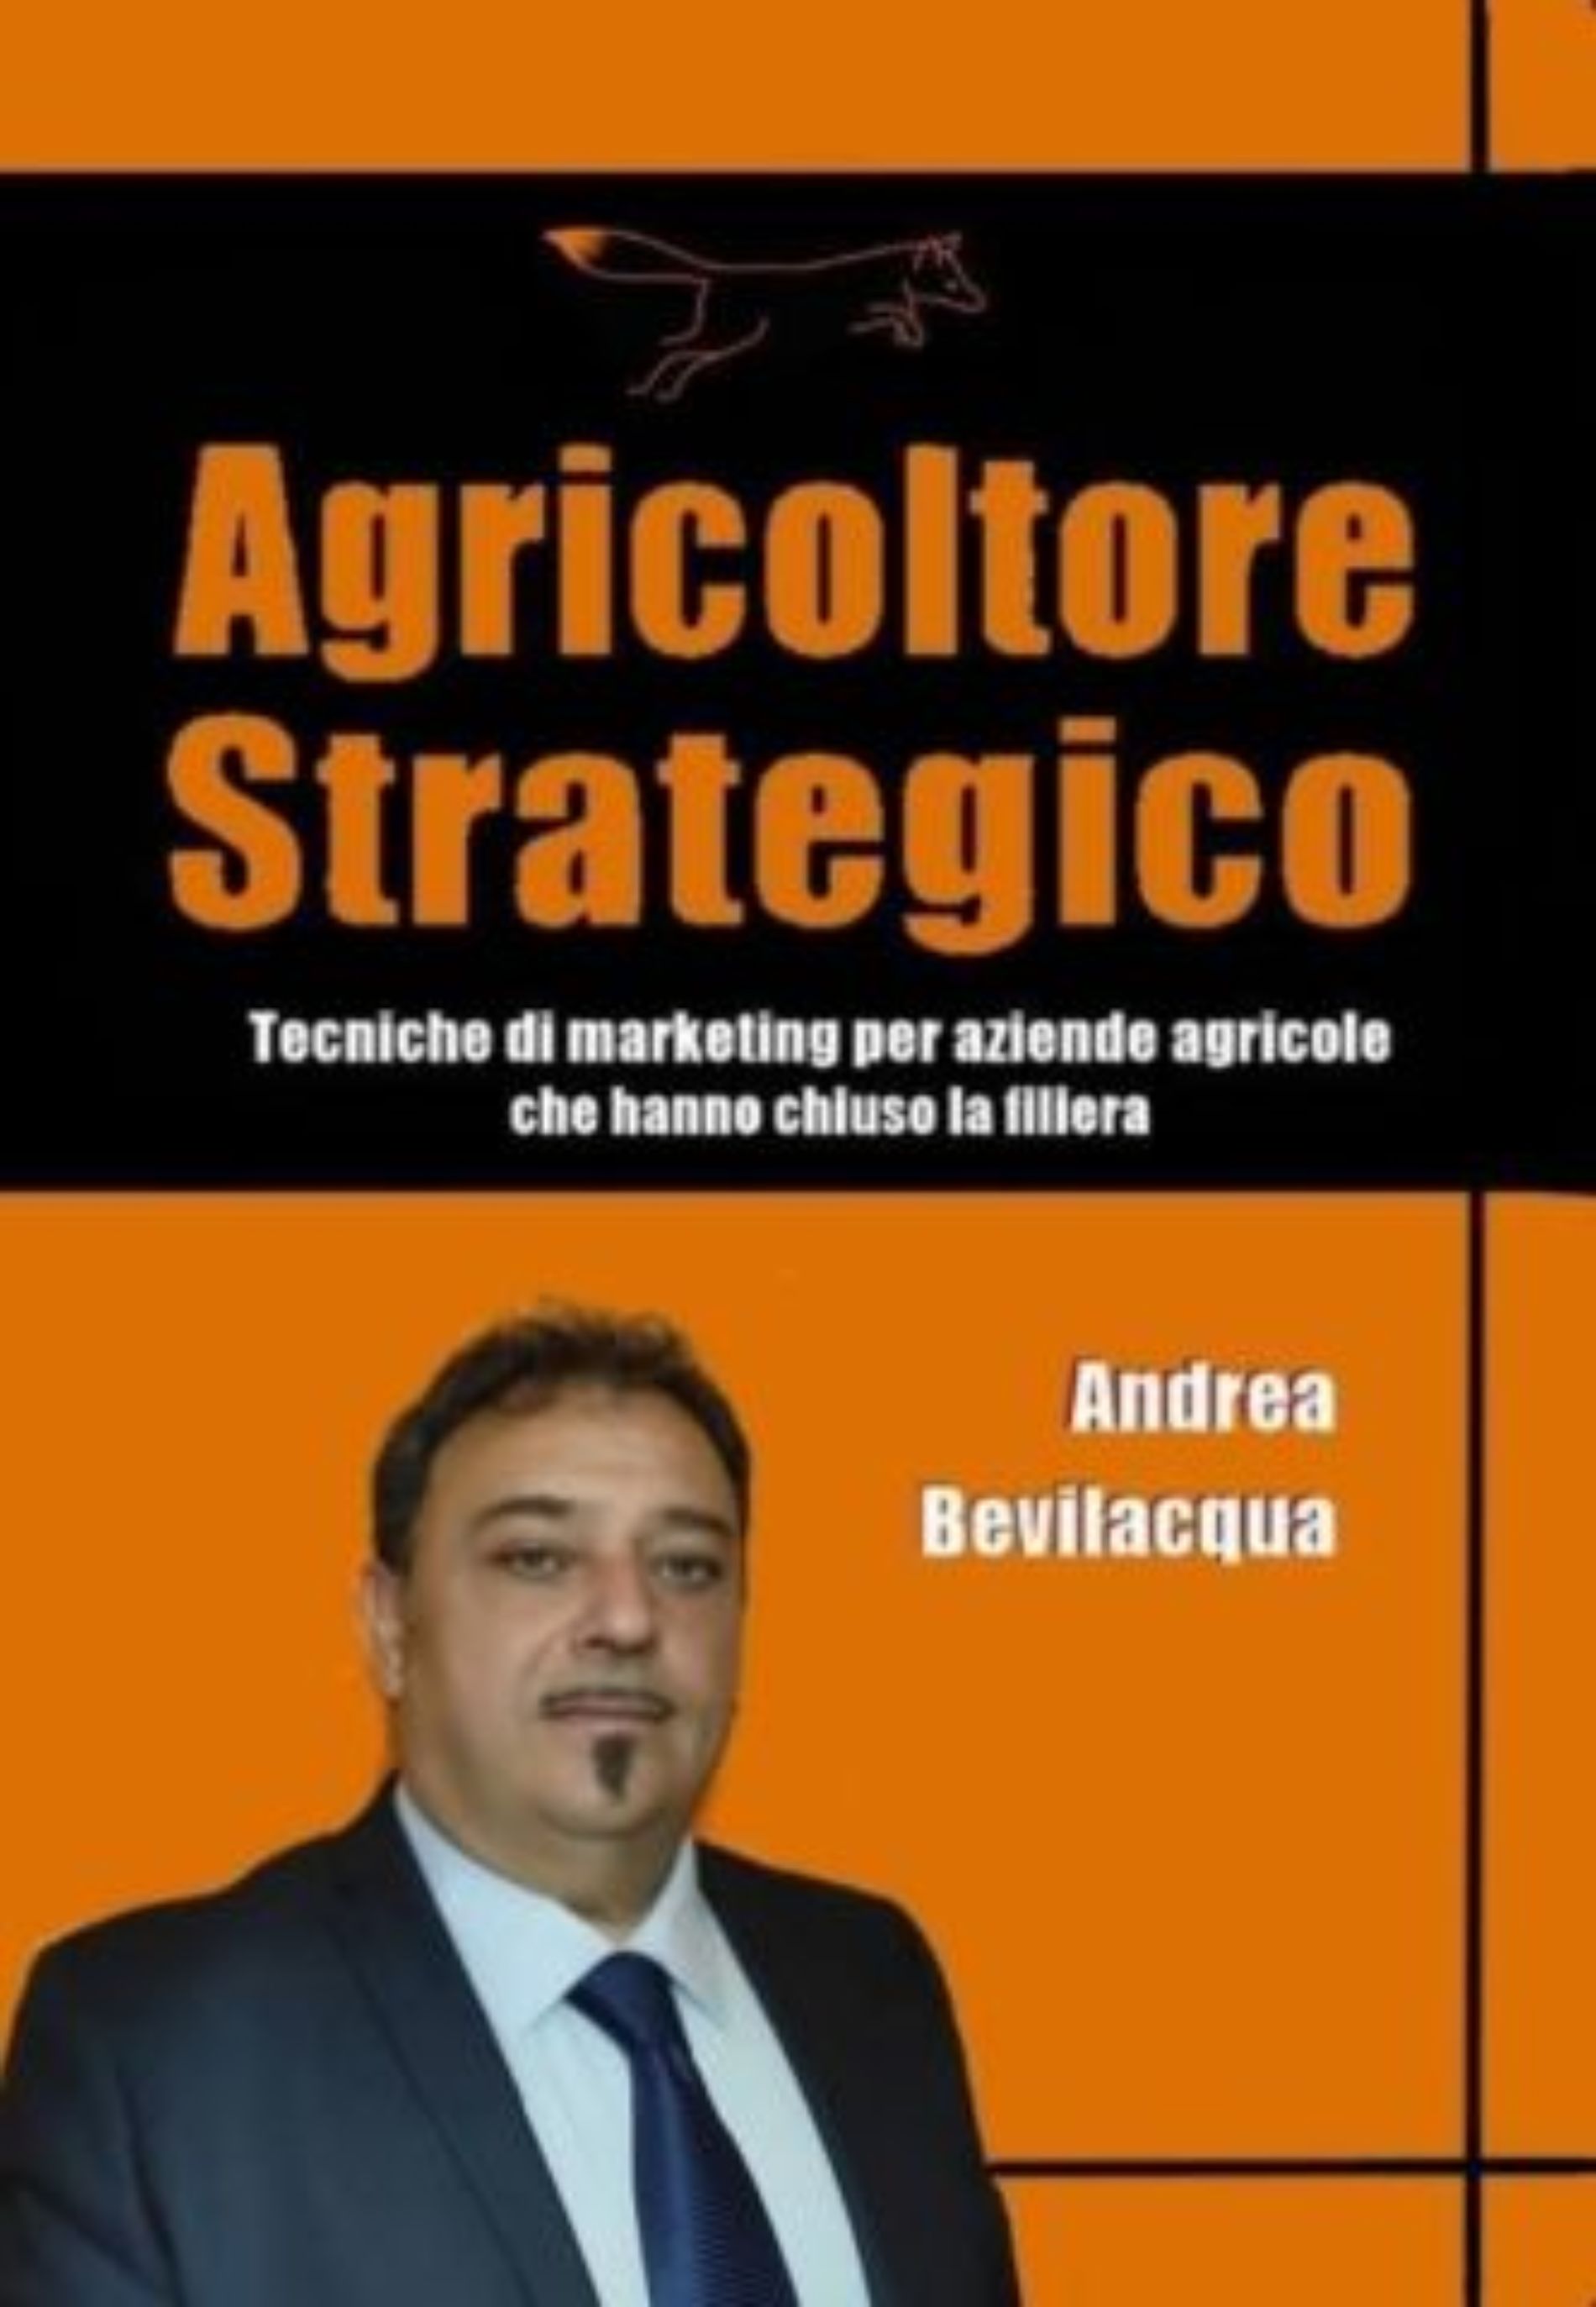 Il barrese Andrea Bevilacqua pubblica un libro per aiutare e far crescere le aziende agroalimentari